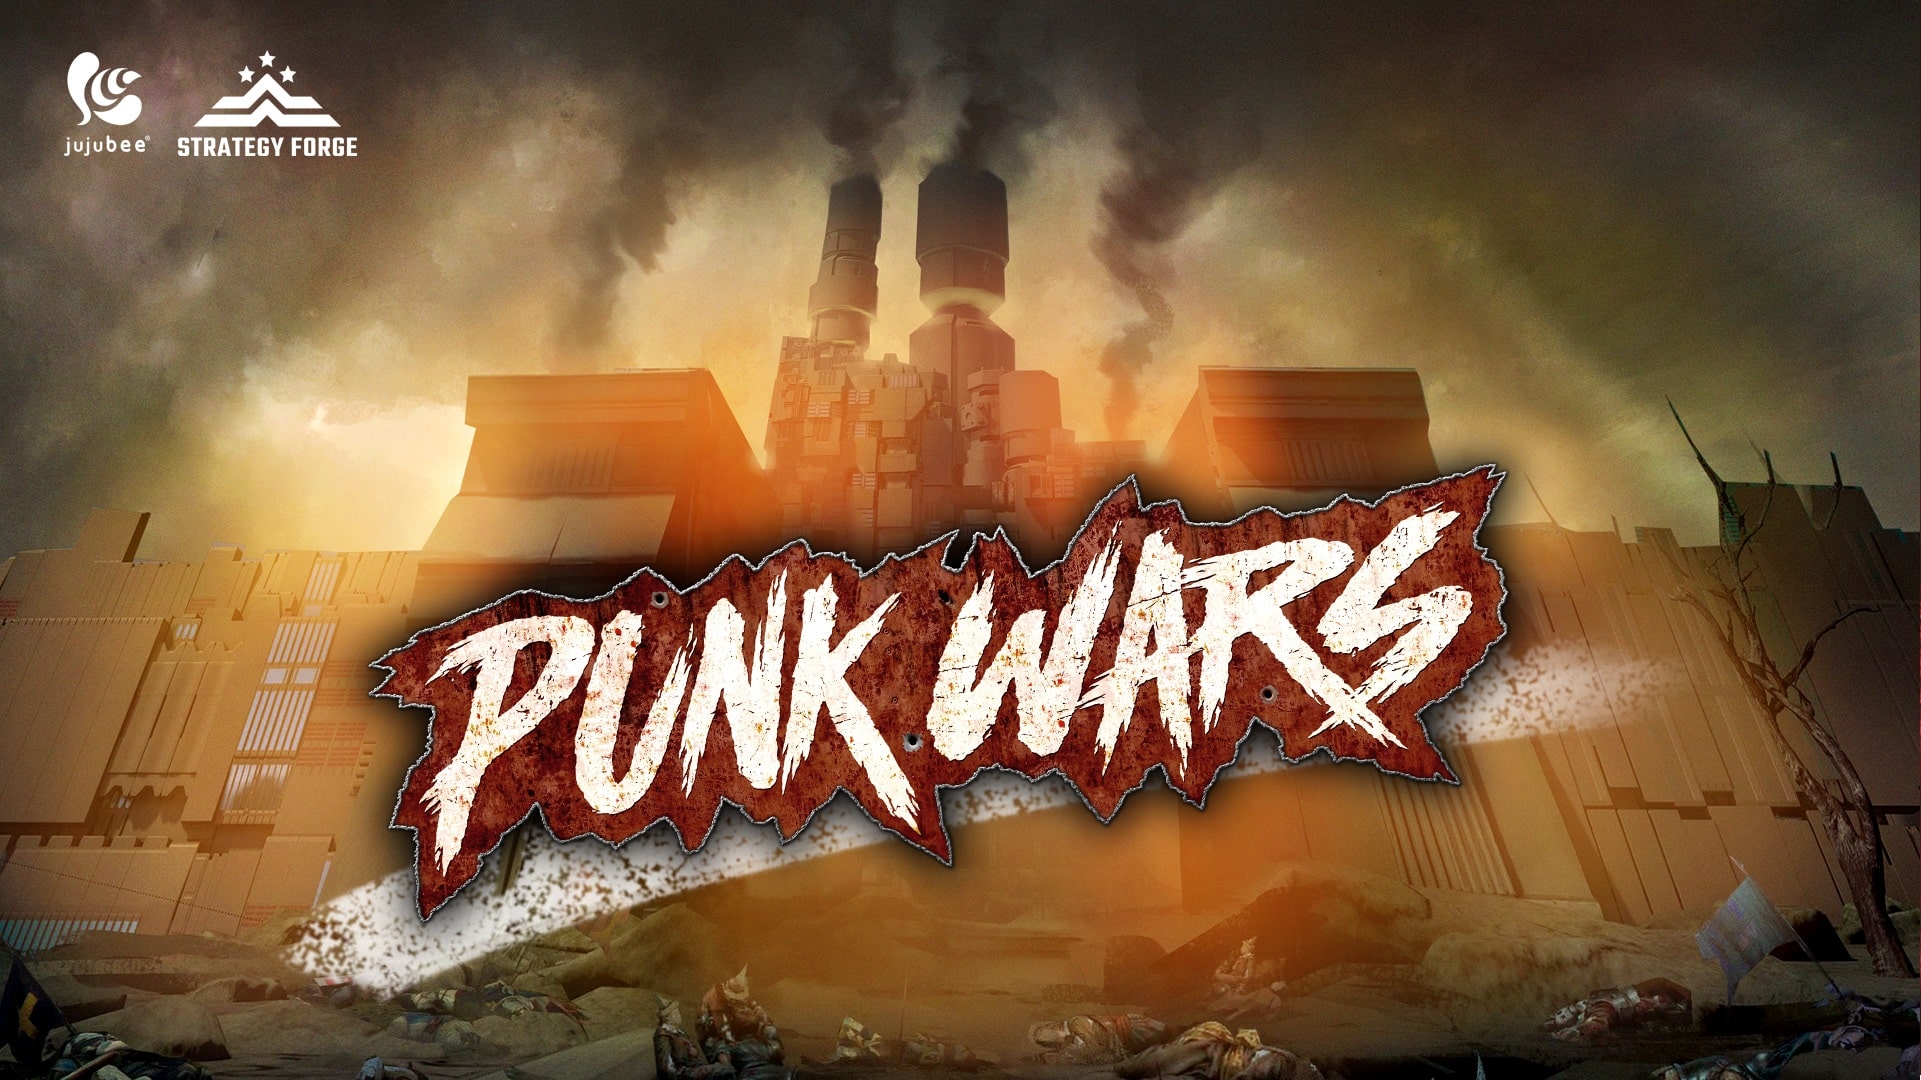 Punk wars agora disponível via steam e gog. Com | b022a107 punk3 | mechas | super robot wars mechas